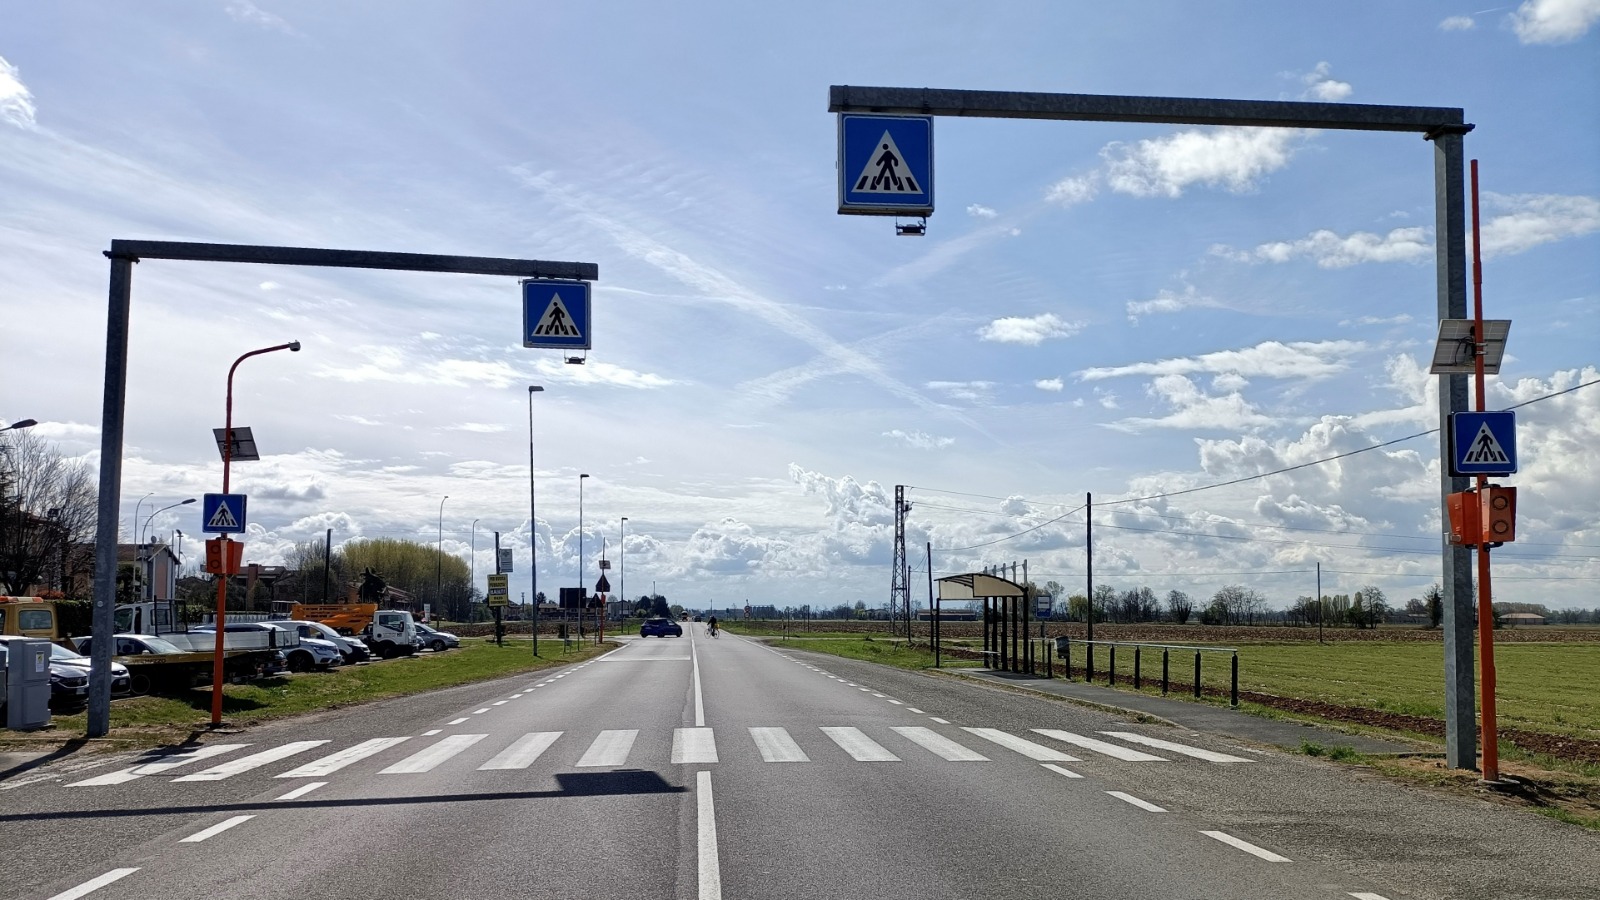 Città metropolitana di Milano: nuove installazioni per il controllo degli attraversamenti semaforici e pedonali e della viabilità lungo le S.P. dell’Ente.